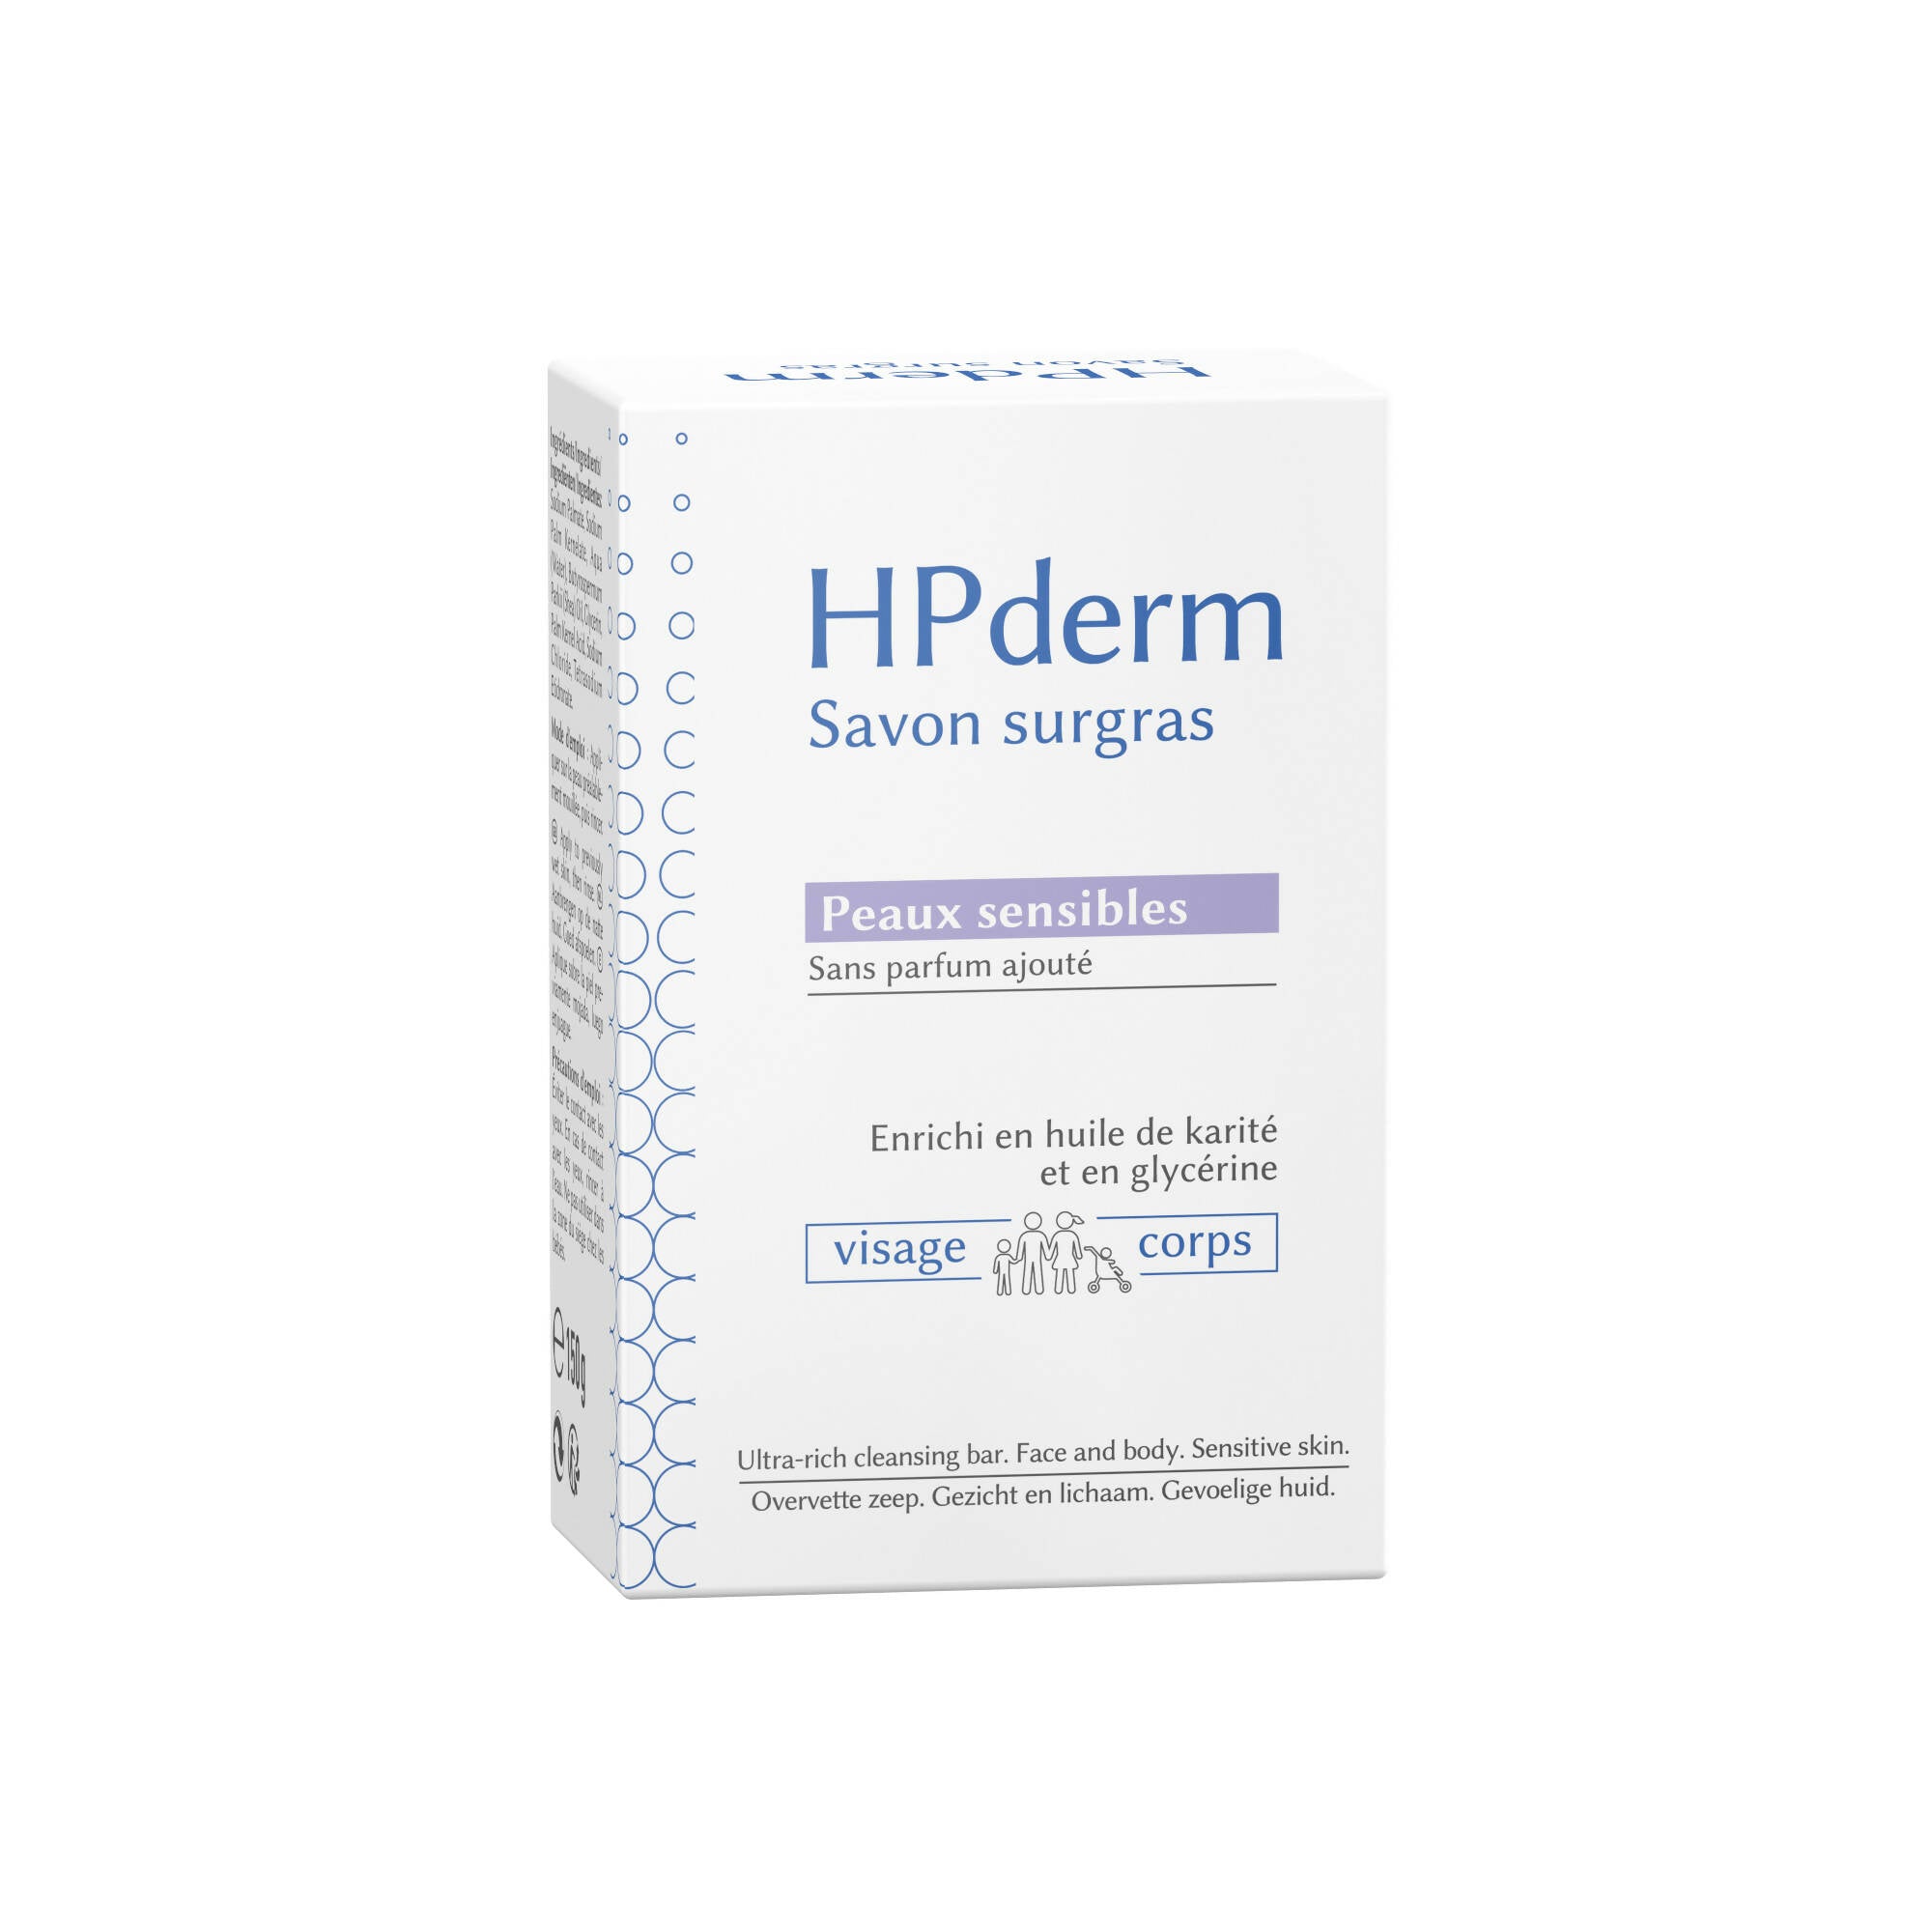 SORIFA - HPderm Surgras Seife - Empfindliche Haut - 99,95 % natürliche Inhaltsstoffe - Angereichert mit Sheaöl und Glycerin - Geeignet für die Familie, auch für Kleinkinder - Neutraler pH-Wert, frei von Duftstoffen - Riegel 150 g - 0